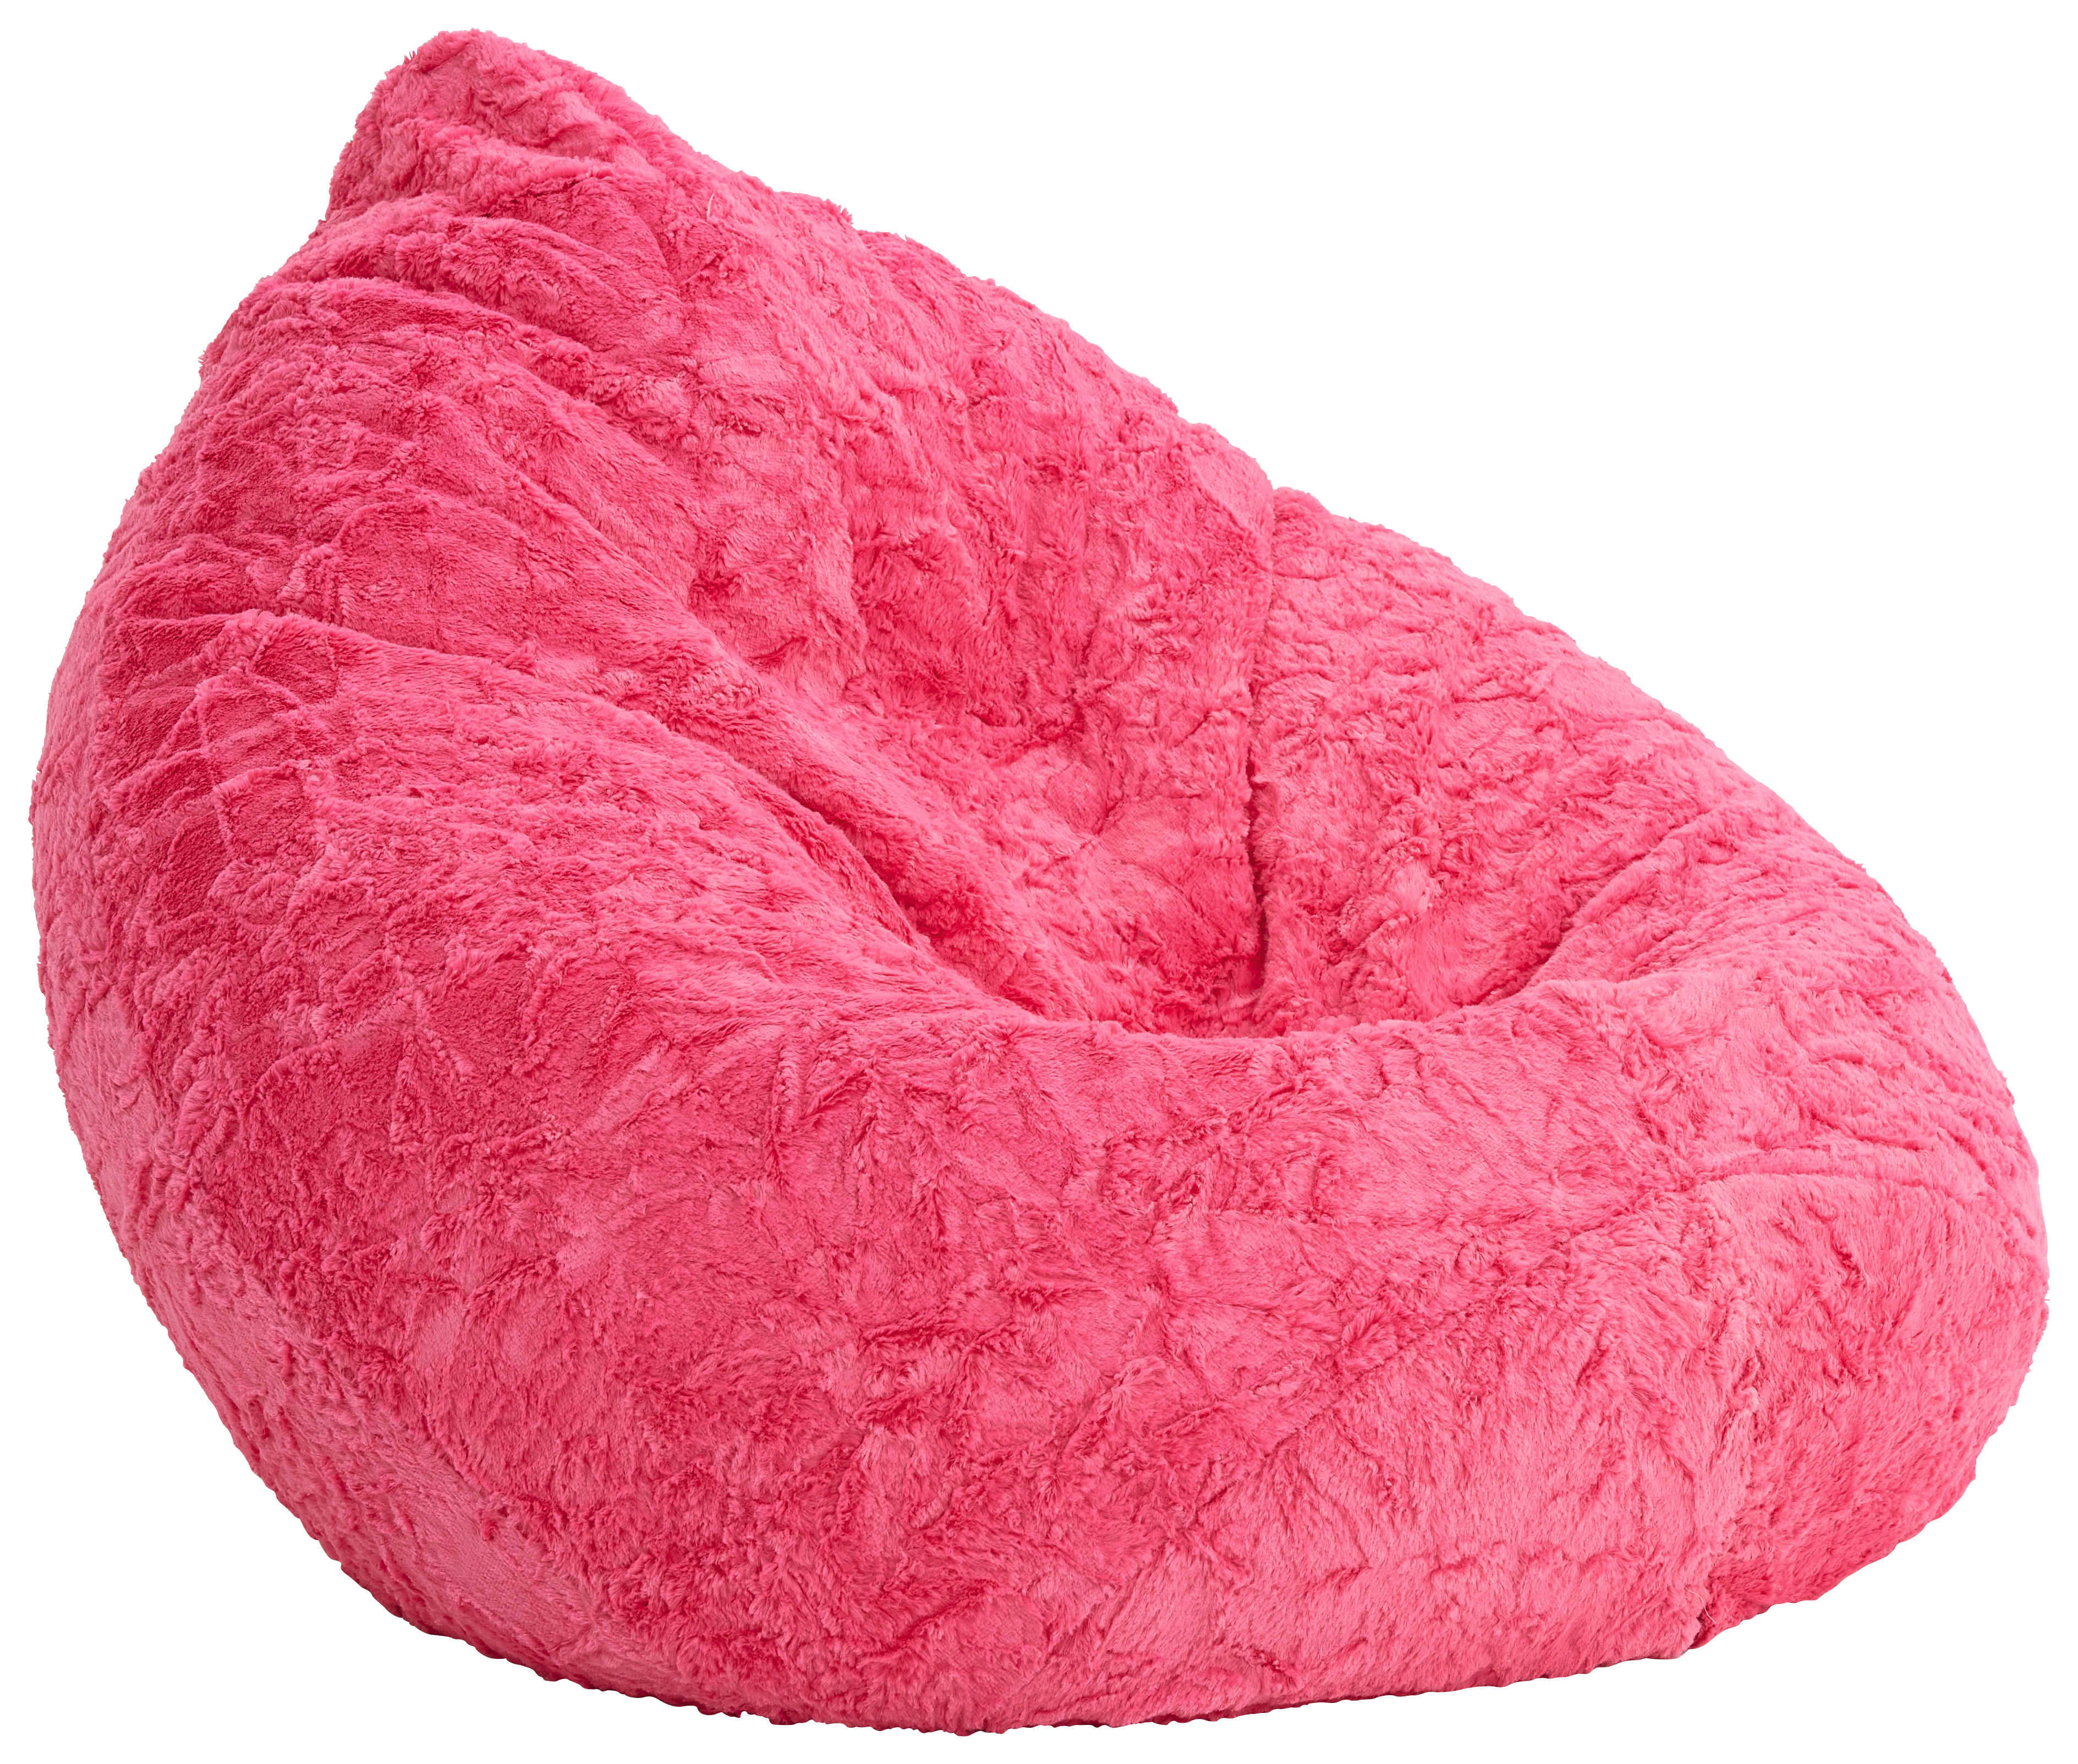 ÜLŐZSÁK 220 l  - Pink, Design, Textil (70/110/70cm) - Carryhome